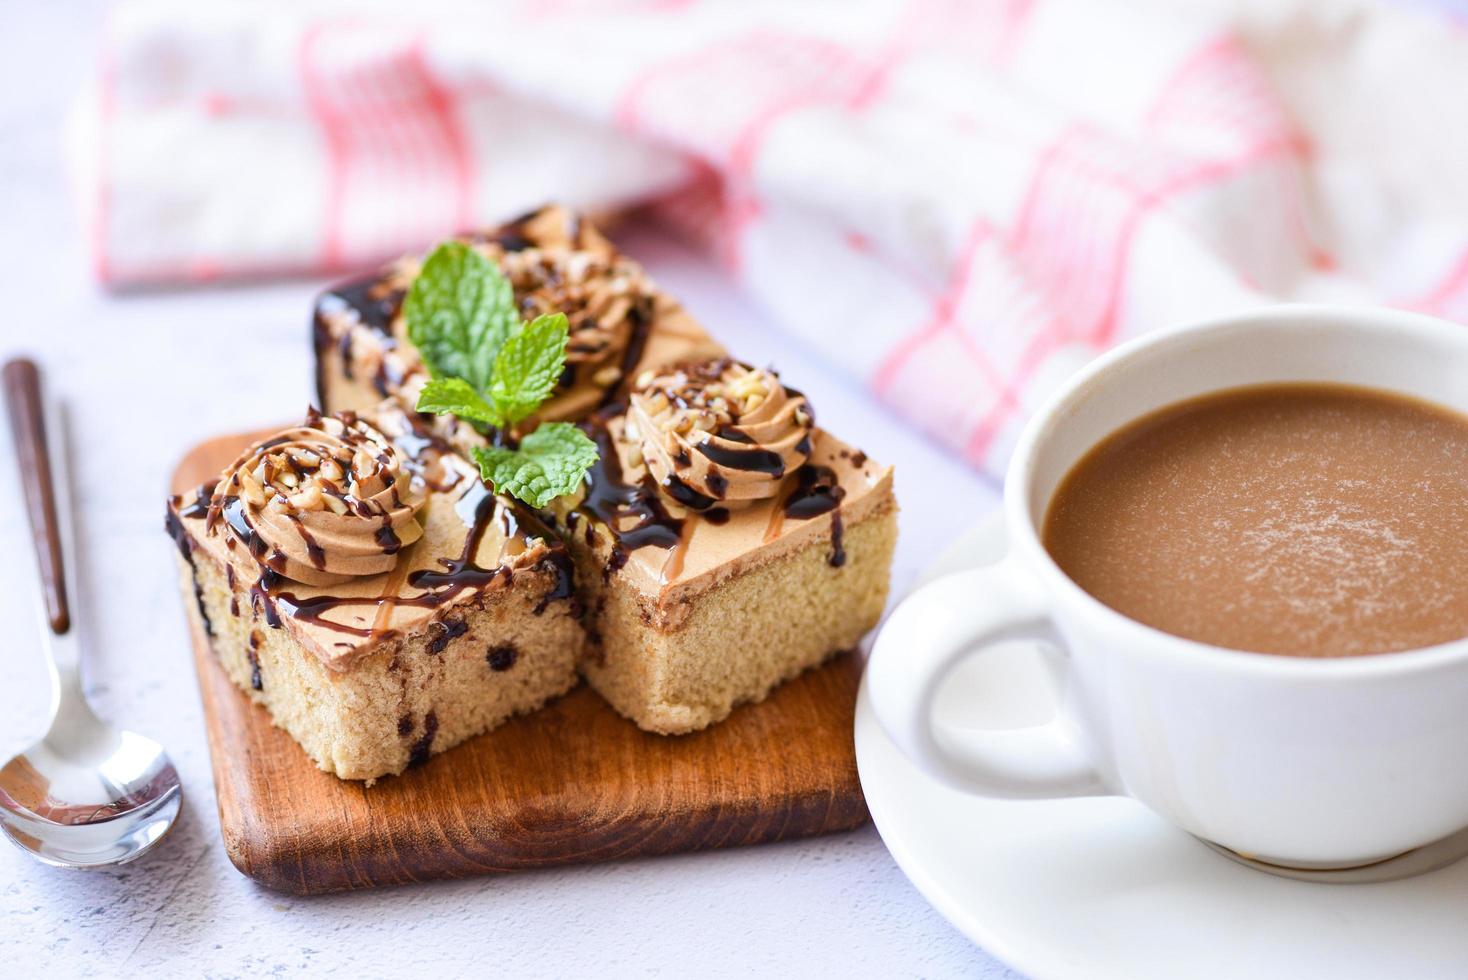 gâteau au café délicieux dessert servi sur la table - tranche de gâteau au chocolat sur fond de planche de bois avec feuille de menthe et tasse de café pour le petit déjeuner photo